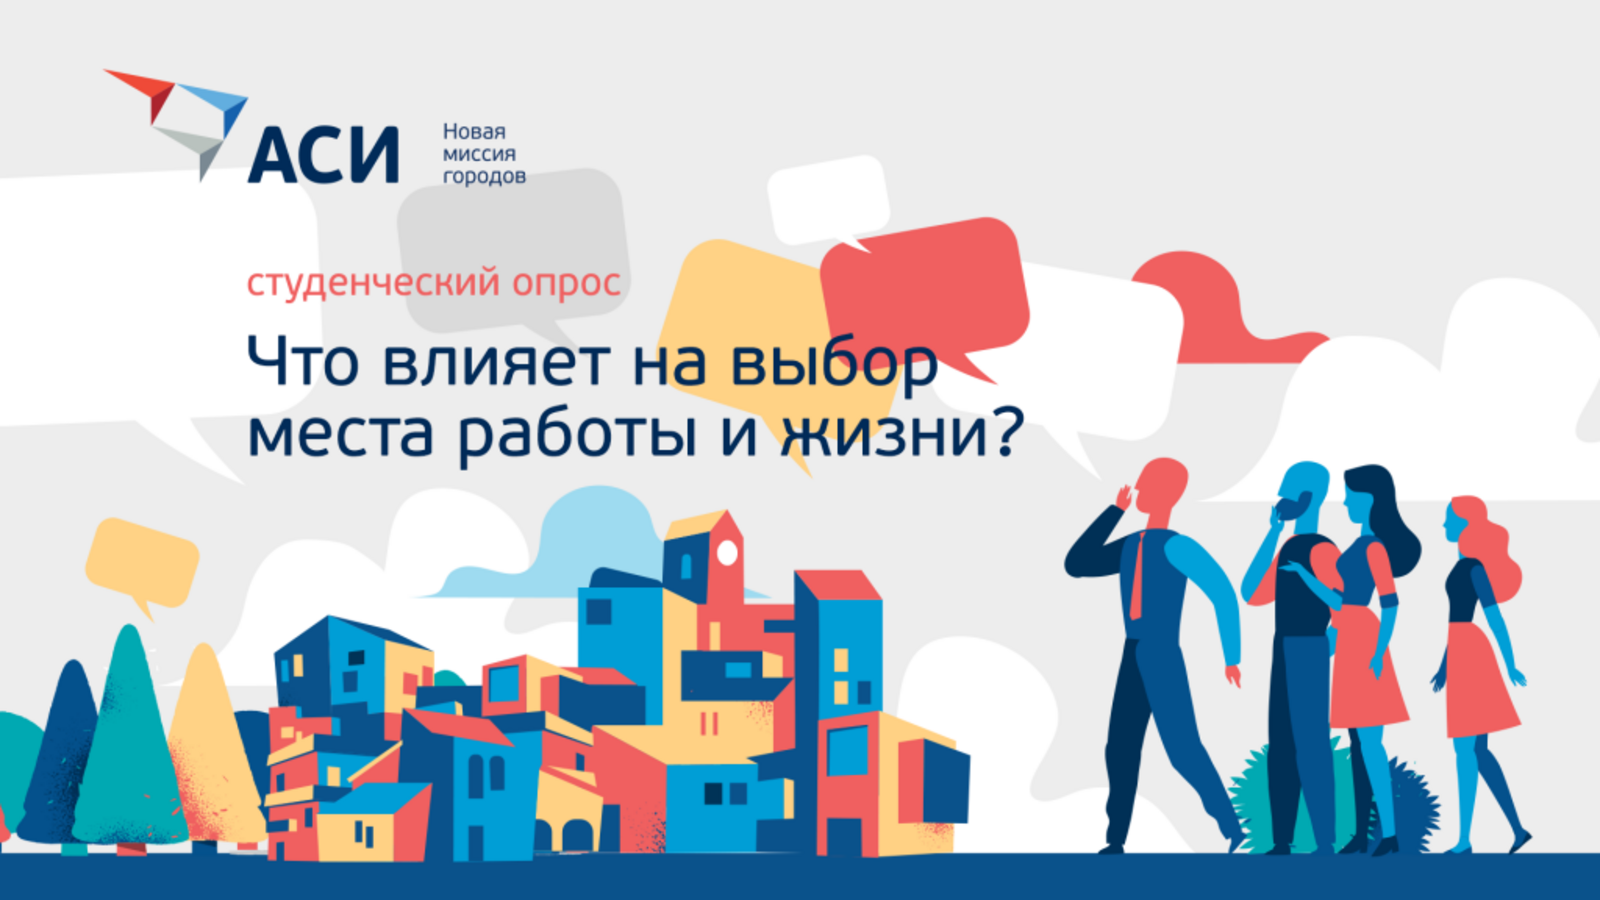 АСИ проводит опрос российских студентов о главных факторах будущего